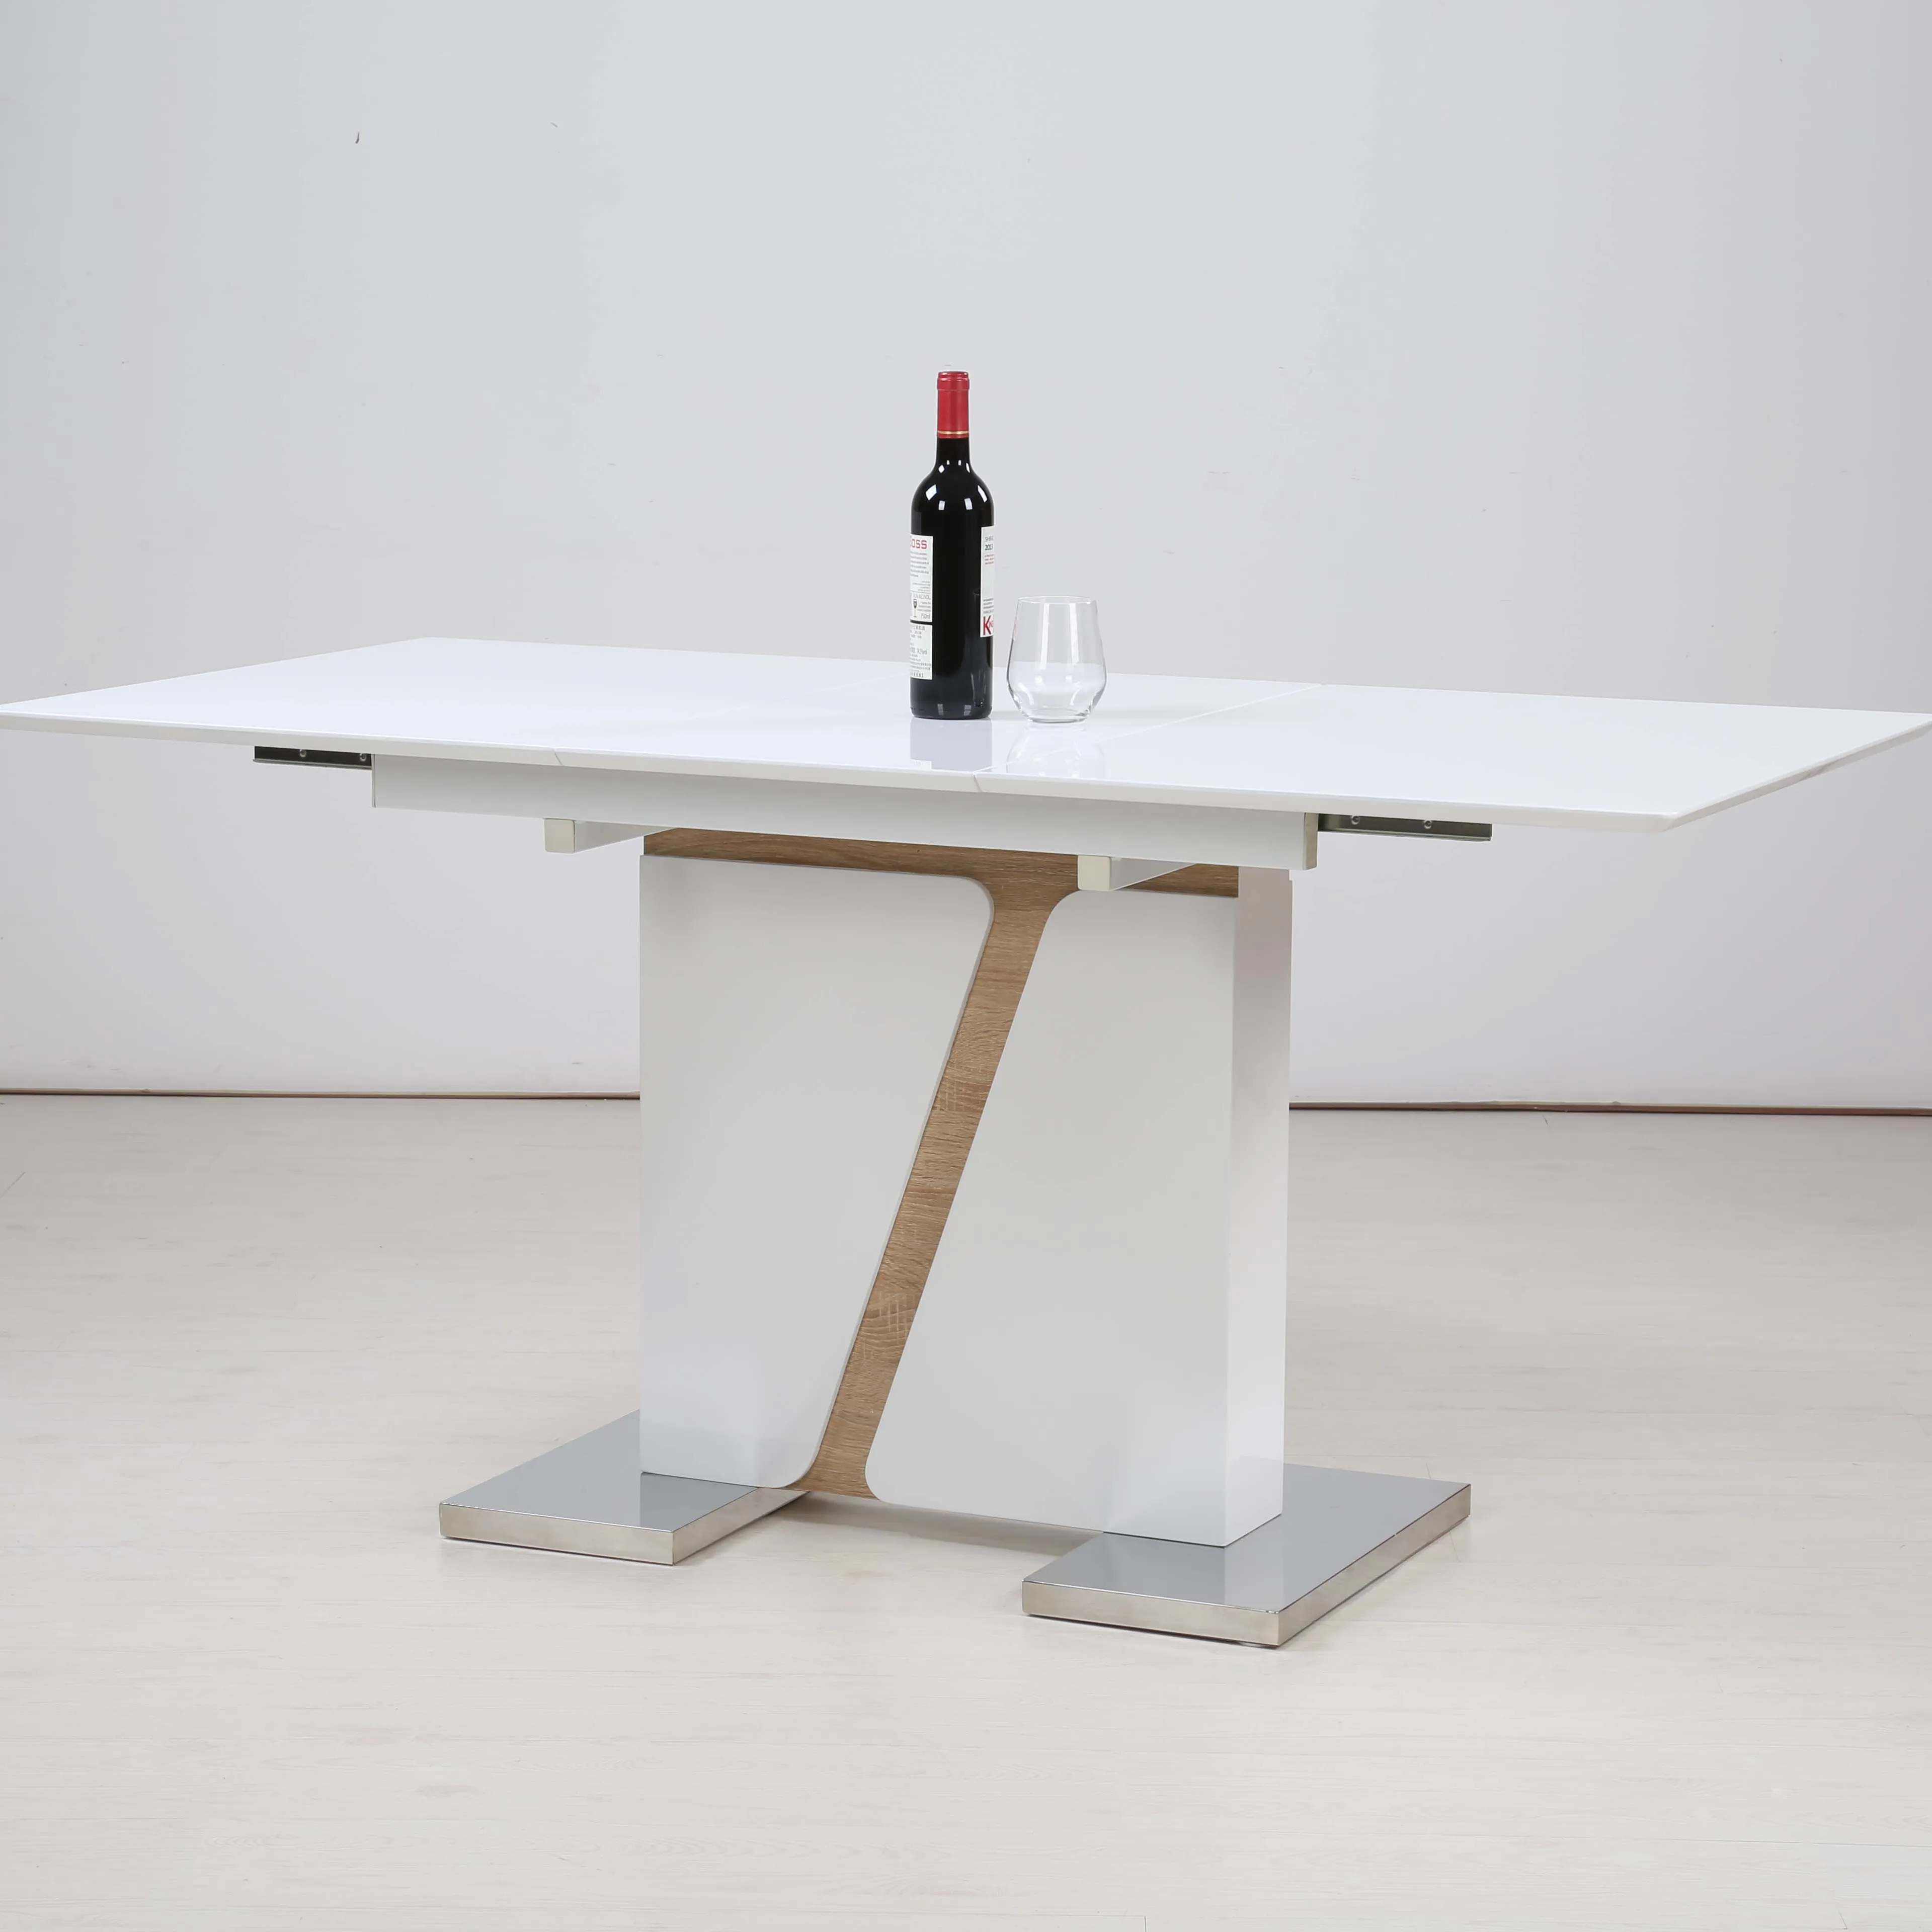 Più nuovo design mobili di lusso bianco lucido lucido elegante allungabile tavolo da pranzo tavolo da pranzo estensibile in legno